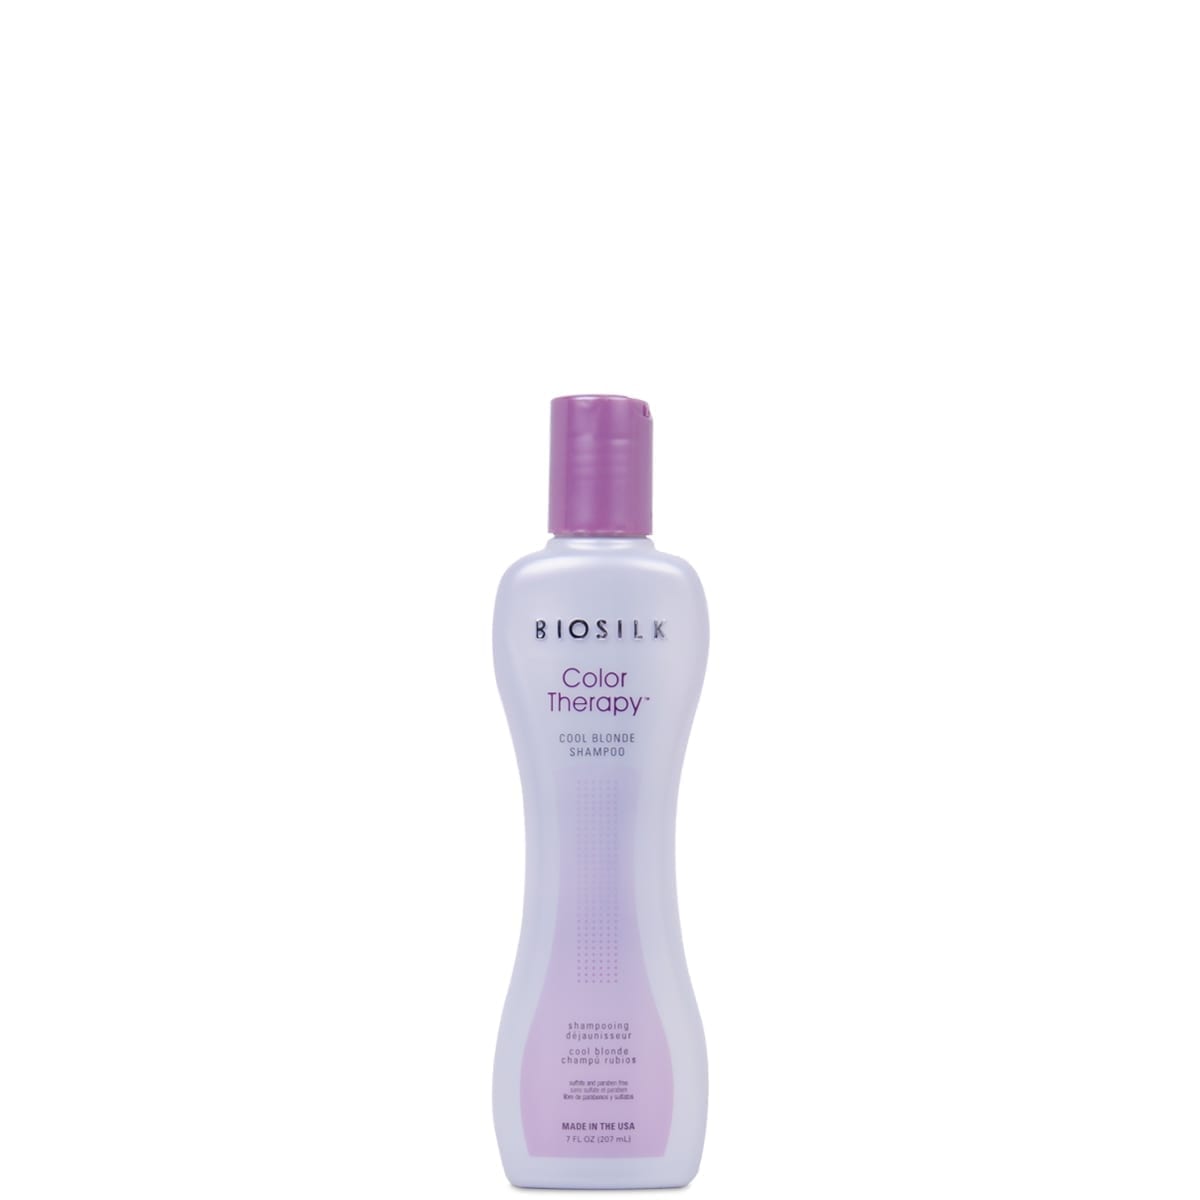 BioSilk | Color Therapy Cool Blonde Shampoo | 207ml